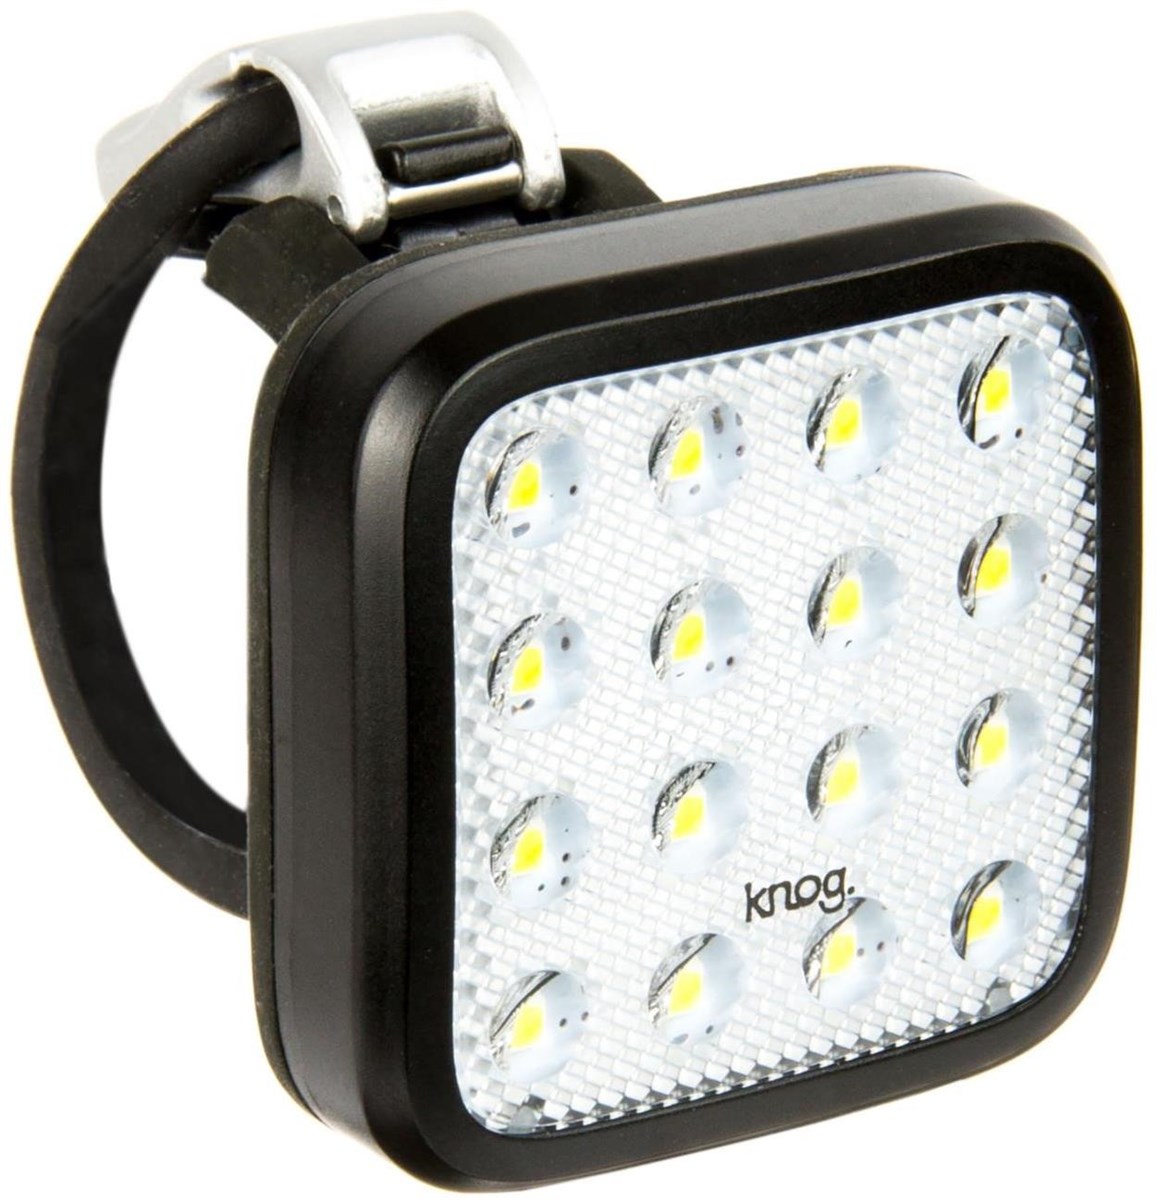 Knog Blinder Mob Kid Grid USB Rechargeable Front Light product image